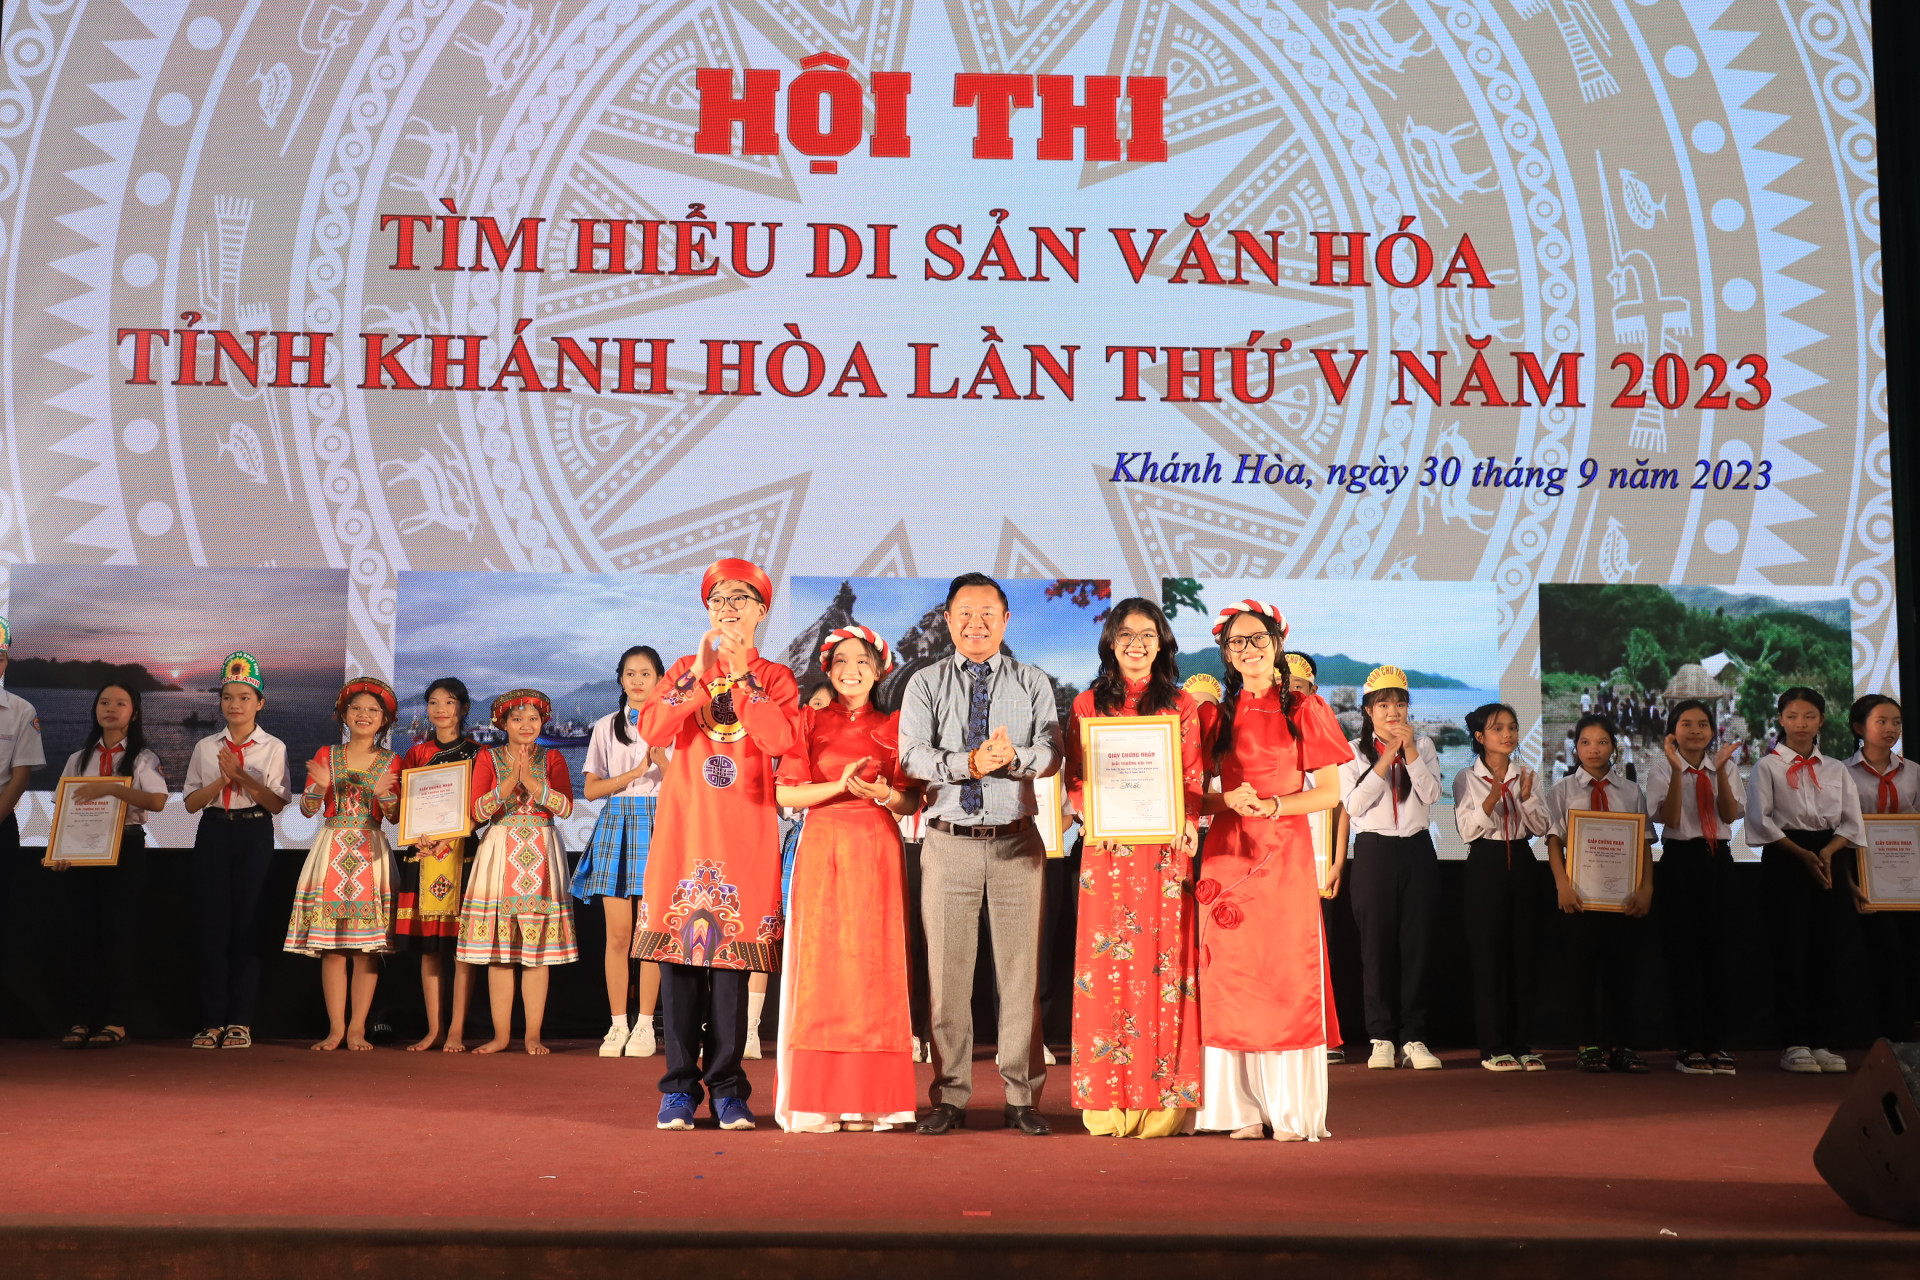 Lãnh đạo Sở Văn hóa và Thể thao trao giải nhất cho đội đến từ Trường THCS Lý Thái Tổ.   